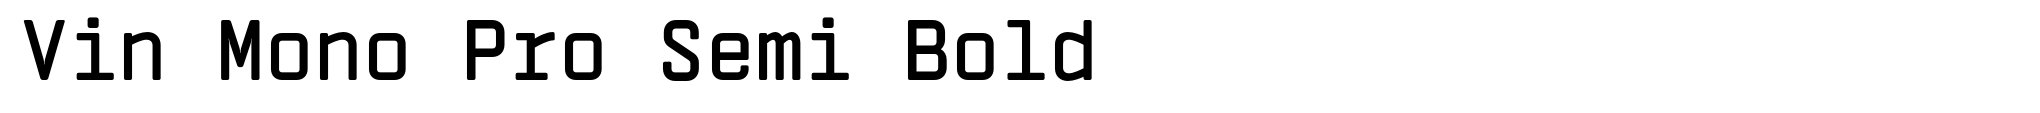 Vin Mono Pro Semi Bold image